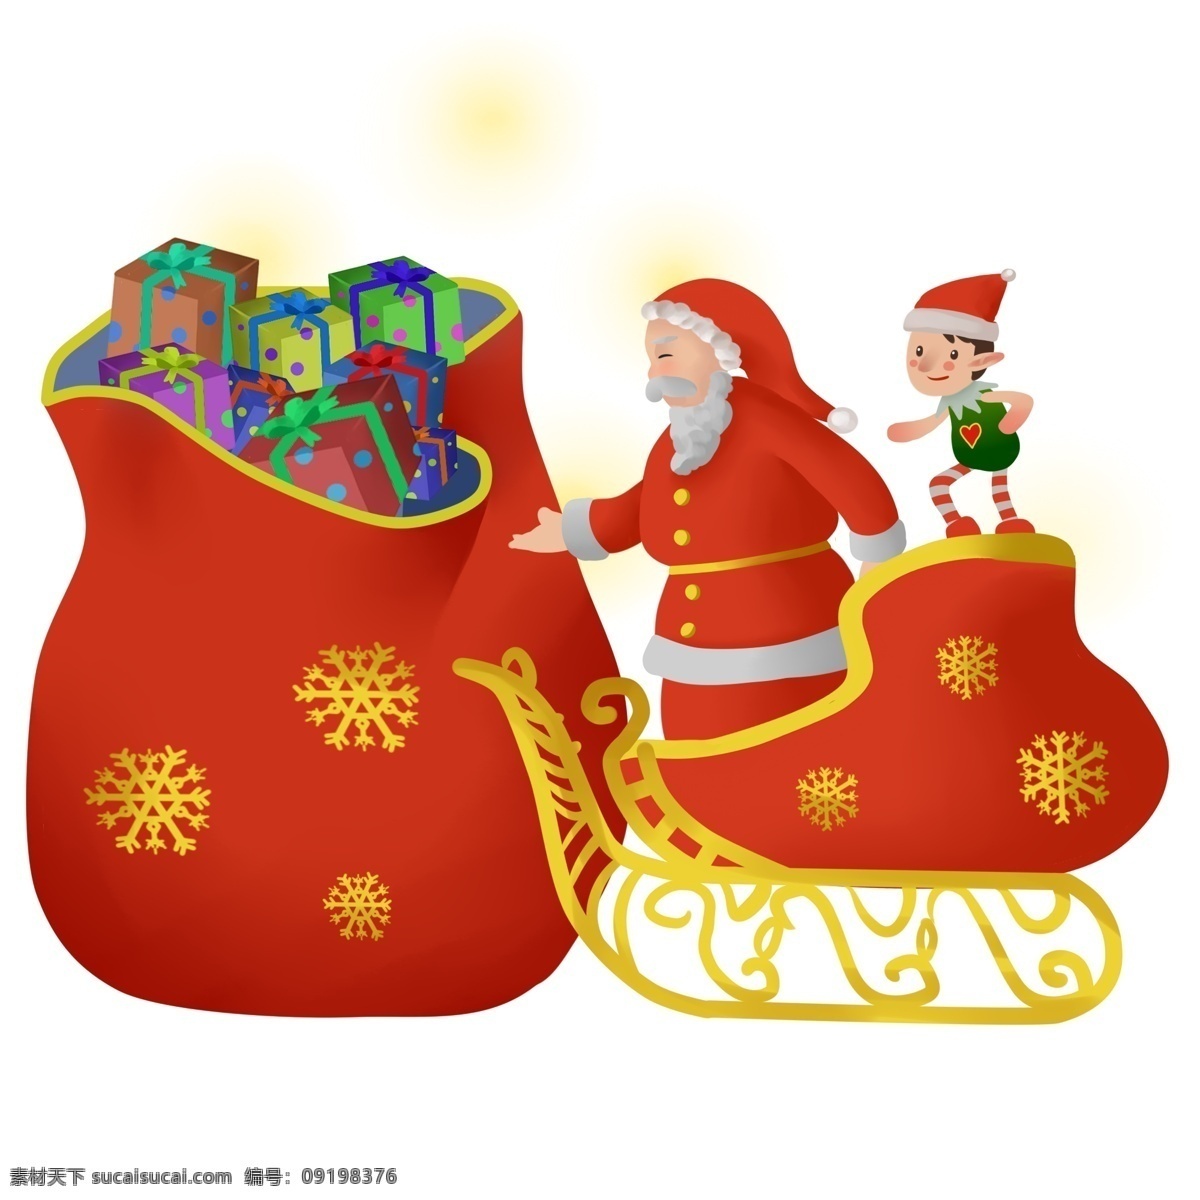 手绘 卡通 圣诞节 圣诞老人 圣诞节人物 圣诞节插画 圣诞人物 圣诞夜 圣诞树 圣诞 礼物 礼盒 小精灵 雪橇